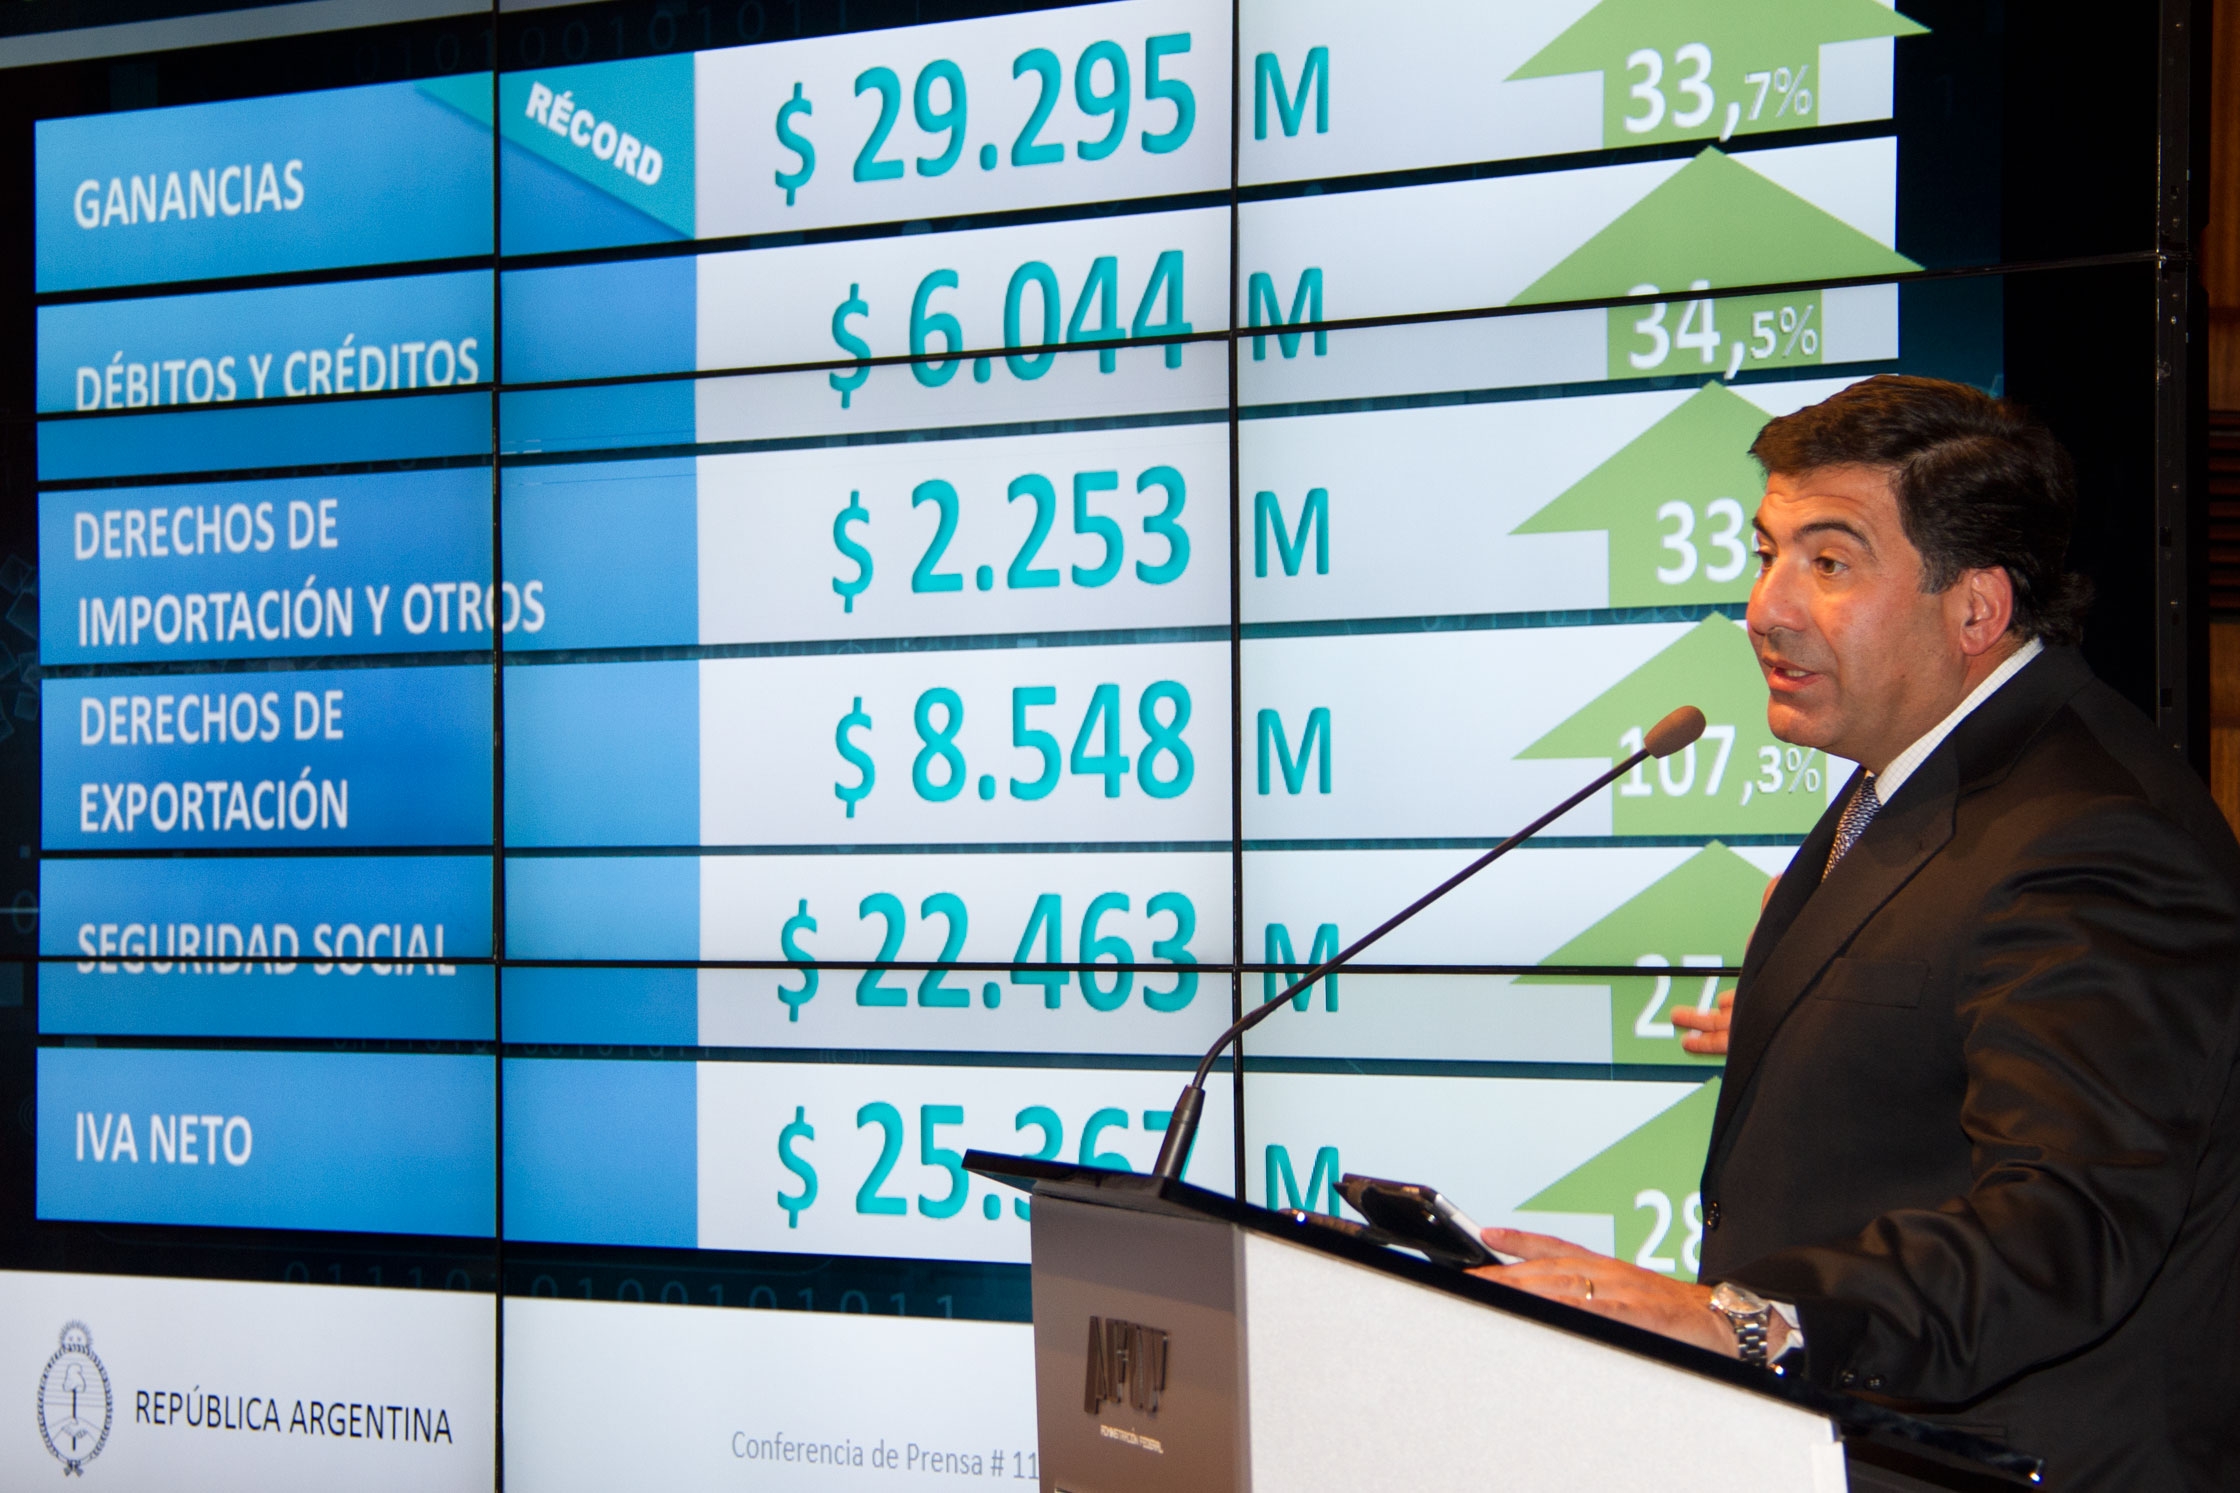 La recaudación acumula $ 549.184,1 millones, con un incremento del 35% con respecto al mismo período de 2013.